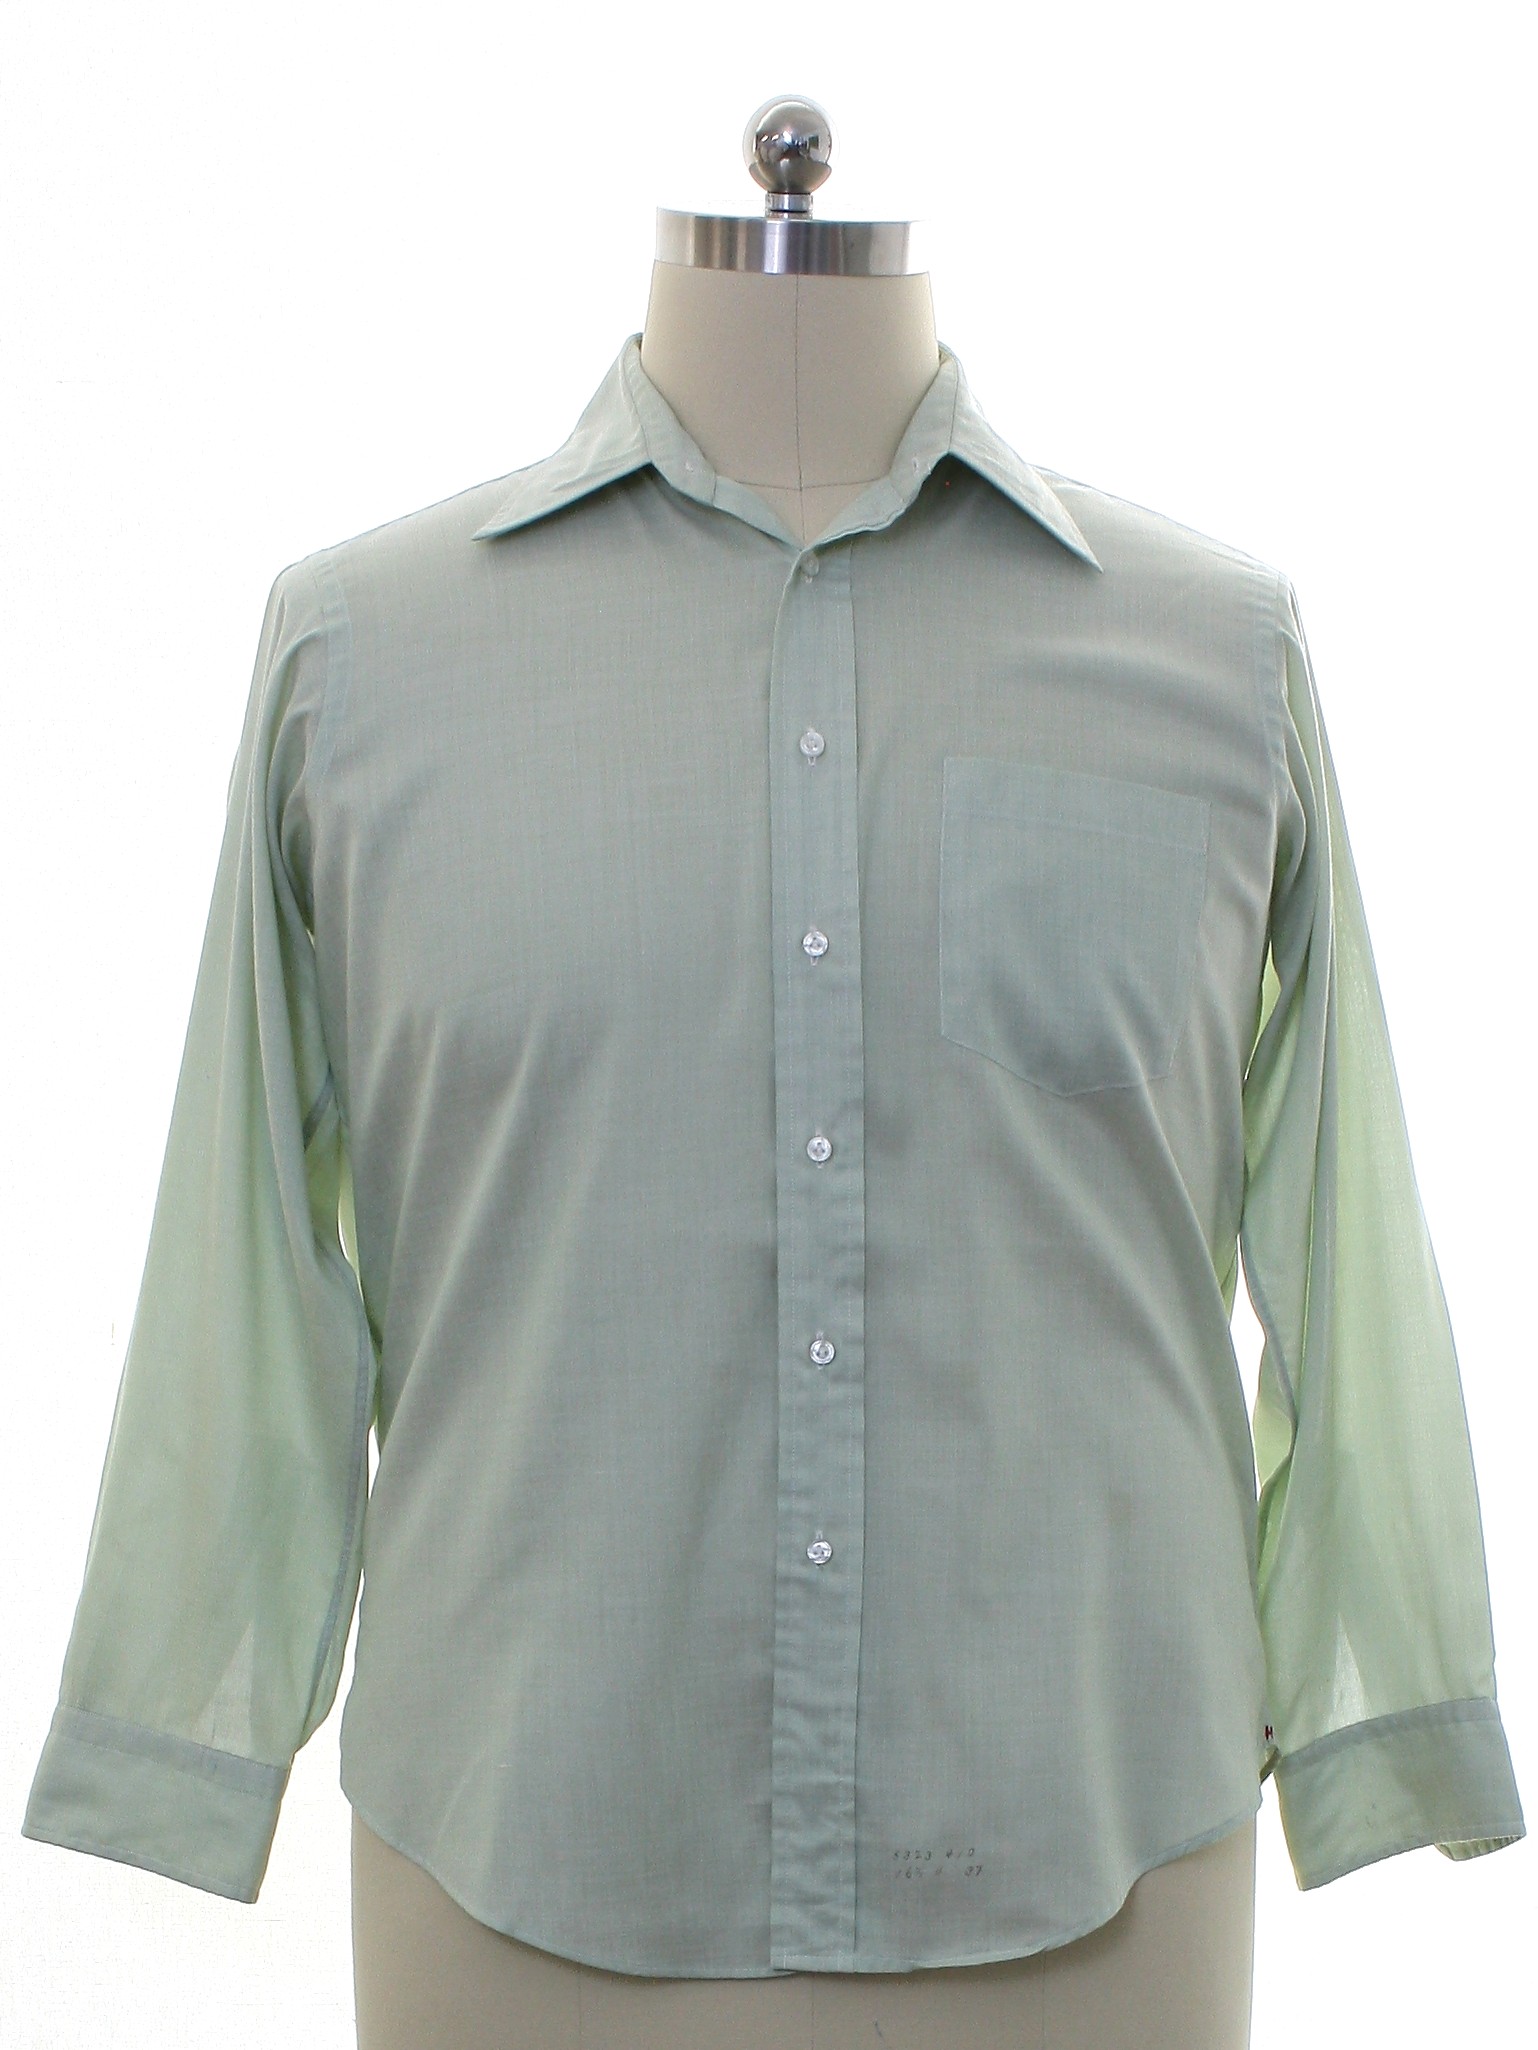 Retro 70s Shirt (Hathaway) : 70s -Hathaway- Mens hazy celedon green ...